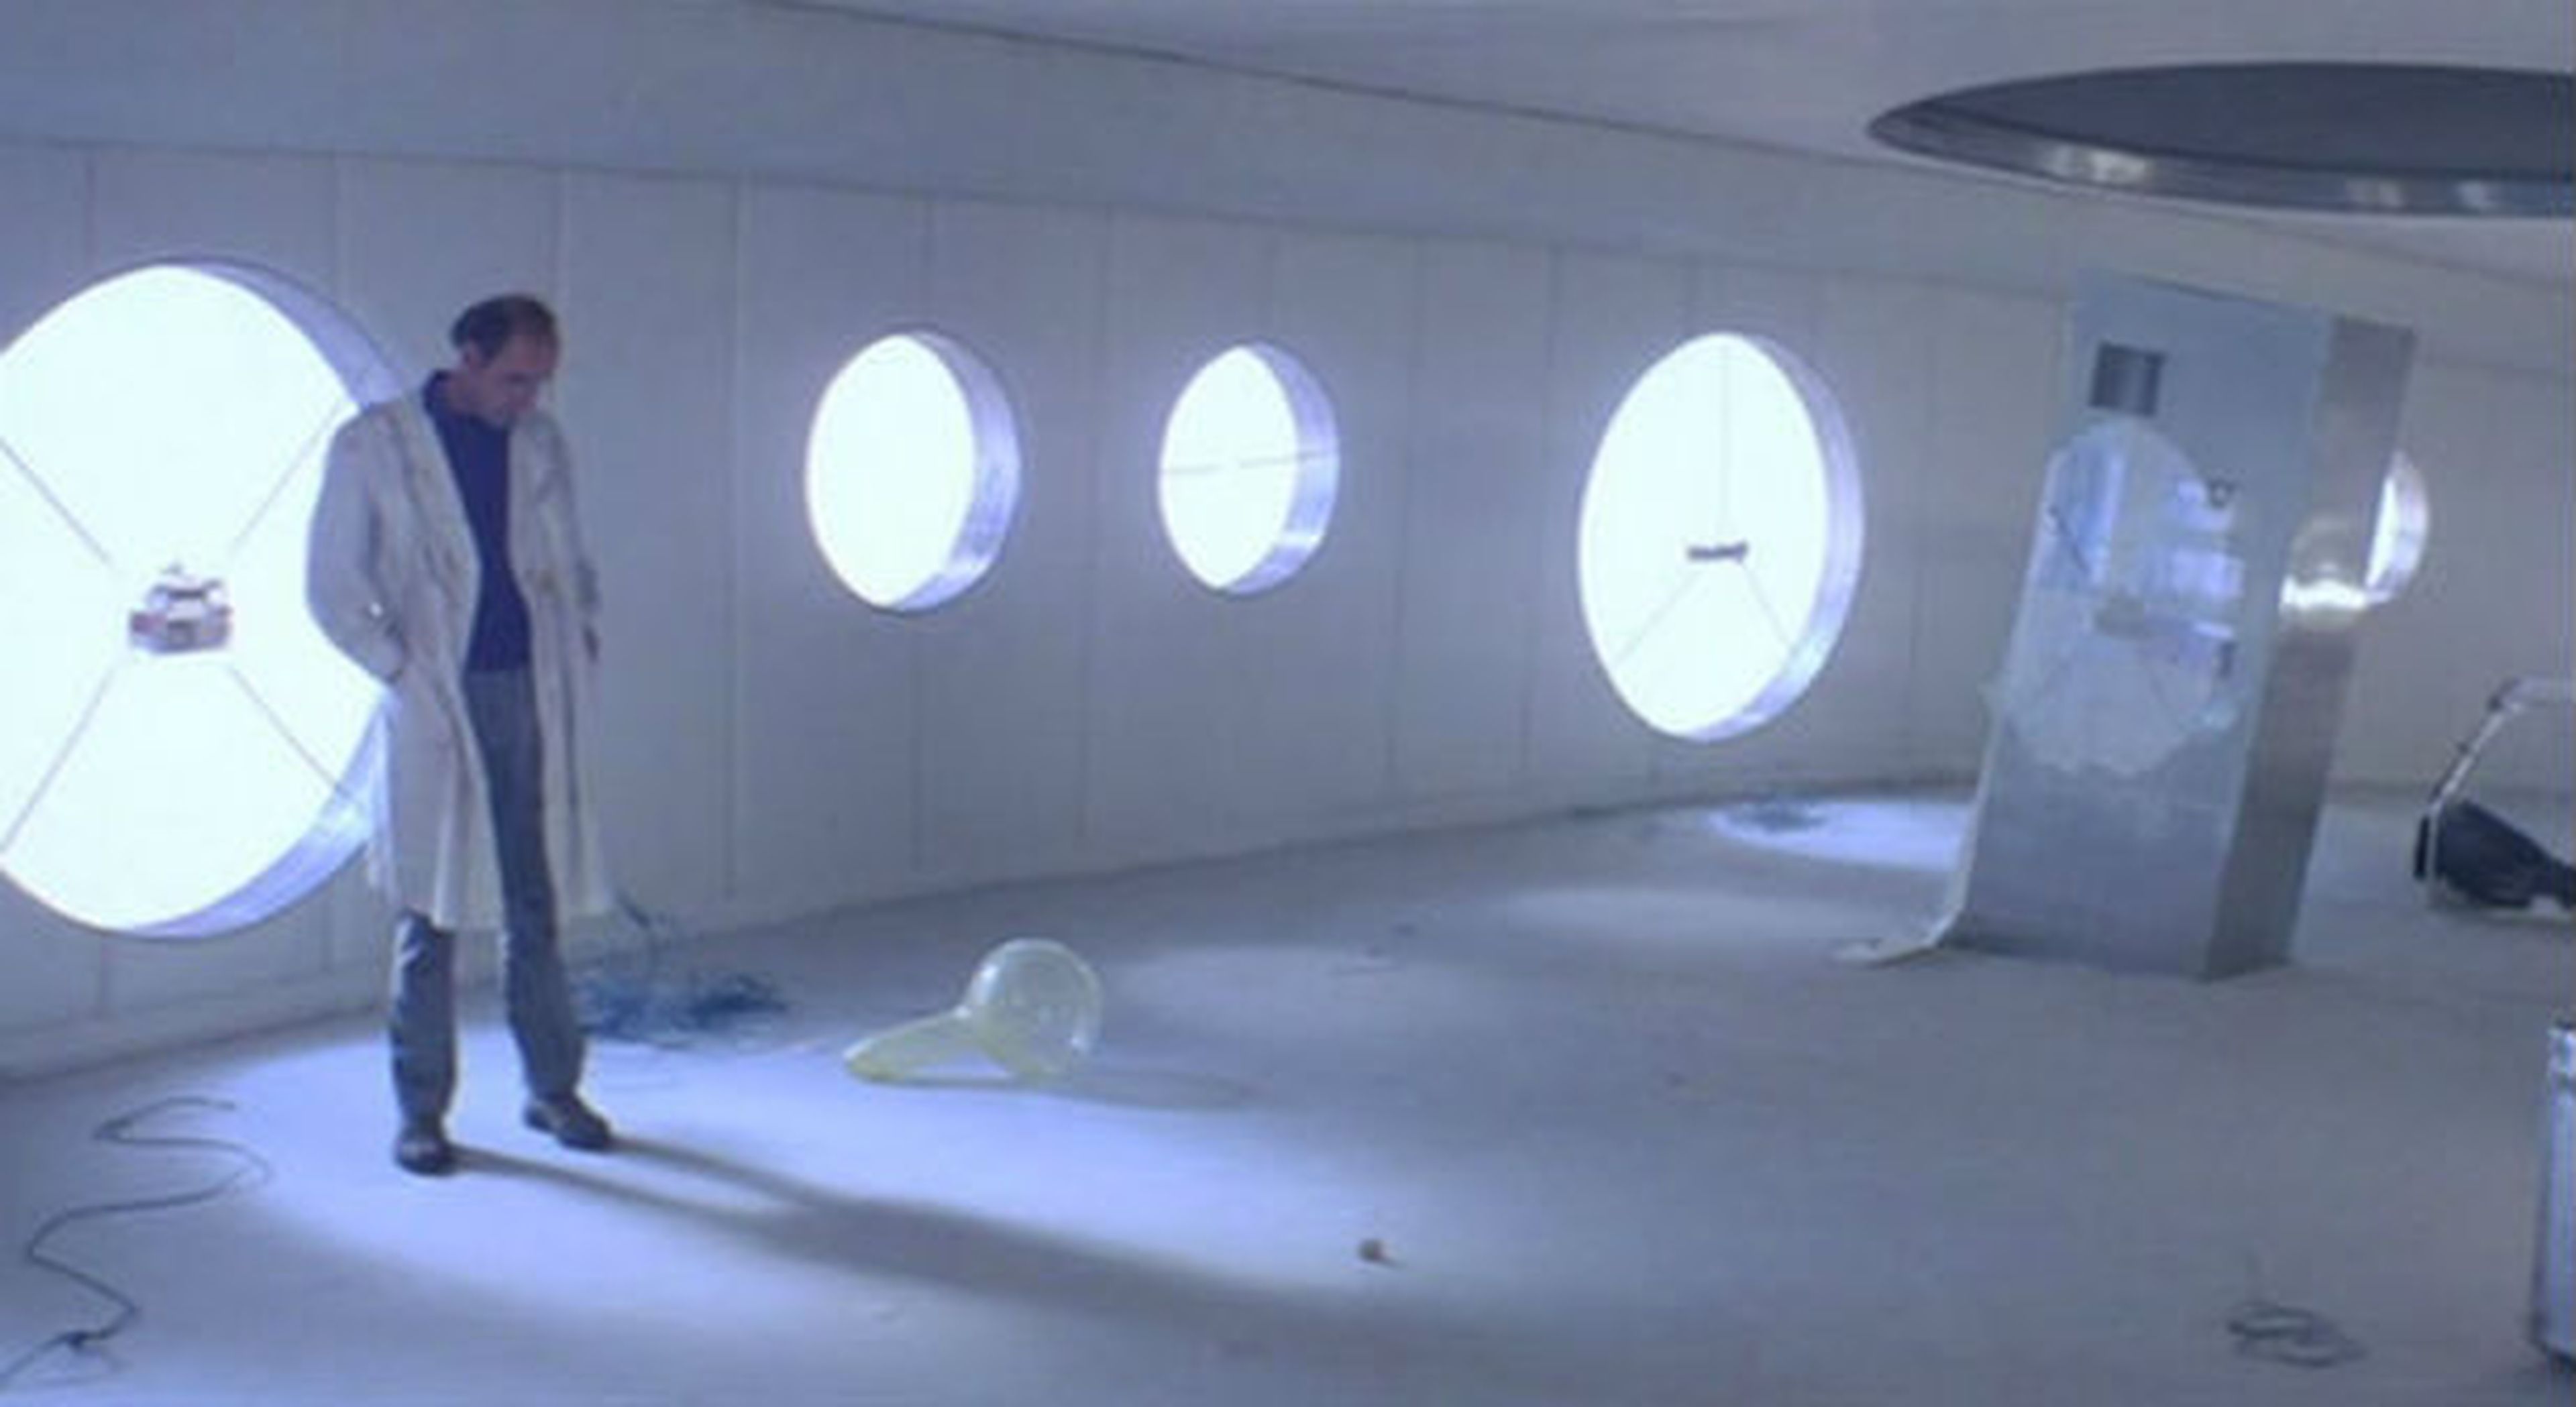 Cine de ciencia ficción: Crítica de Solaris (1972)